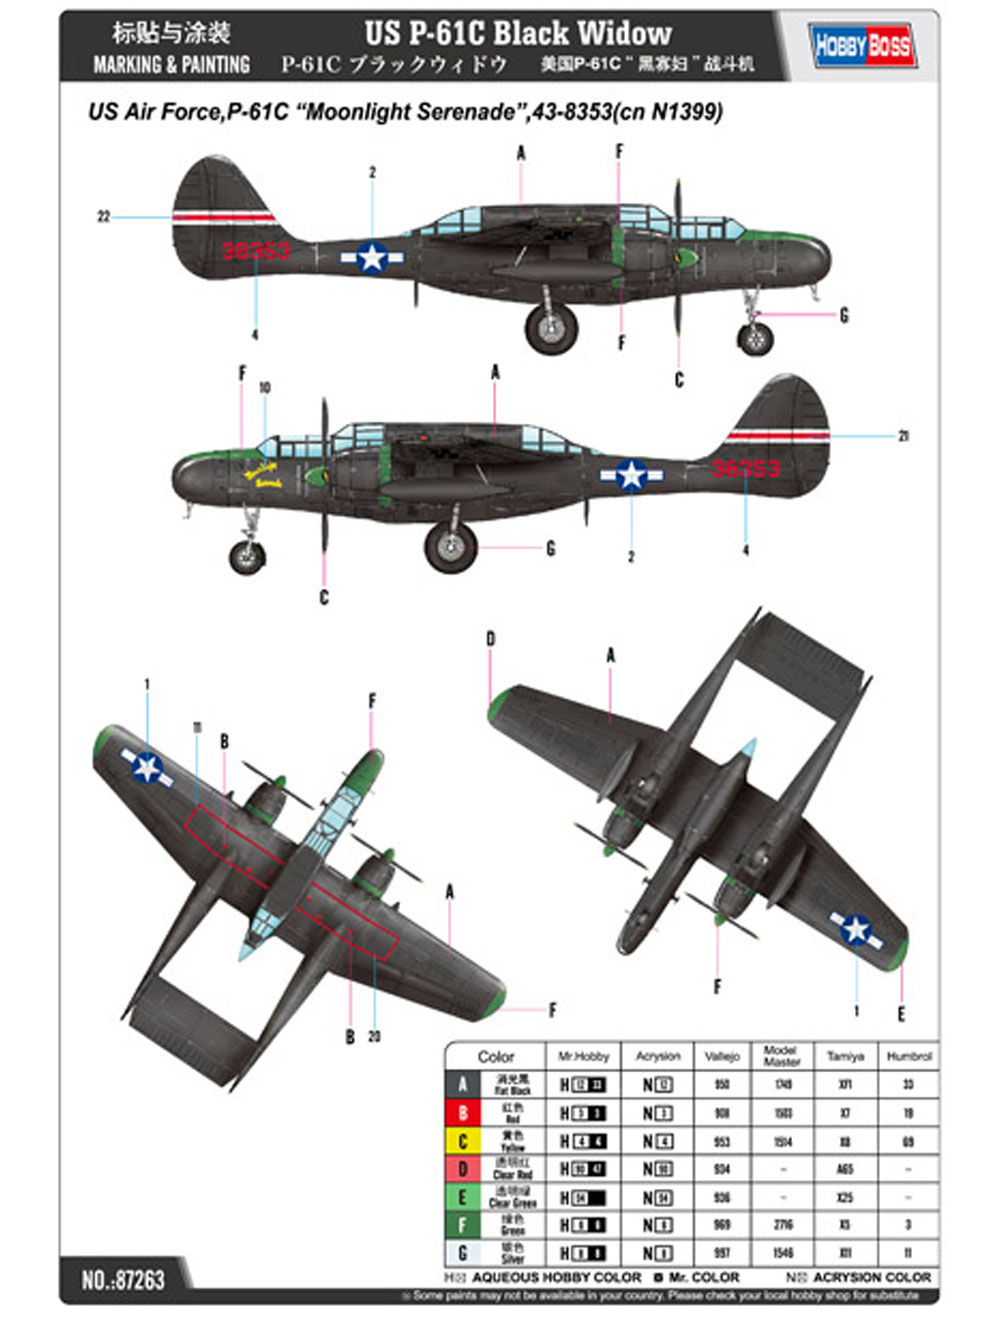 P-61C ブラックウィドウ プラモデル (ホビーボス 1/72 エアクラフト プラモデル No.87263) 商品画像_1